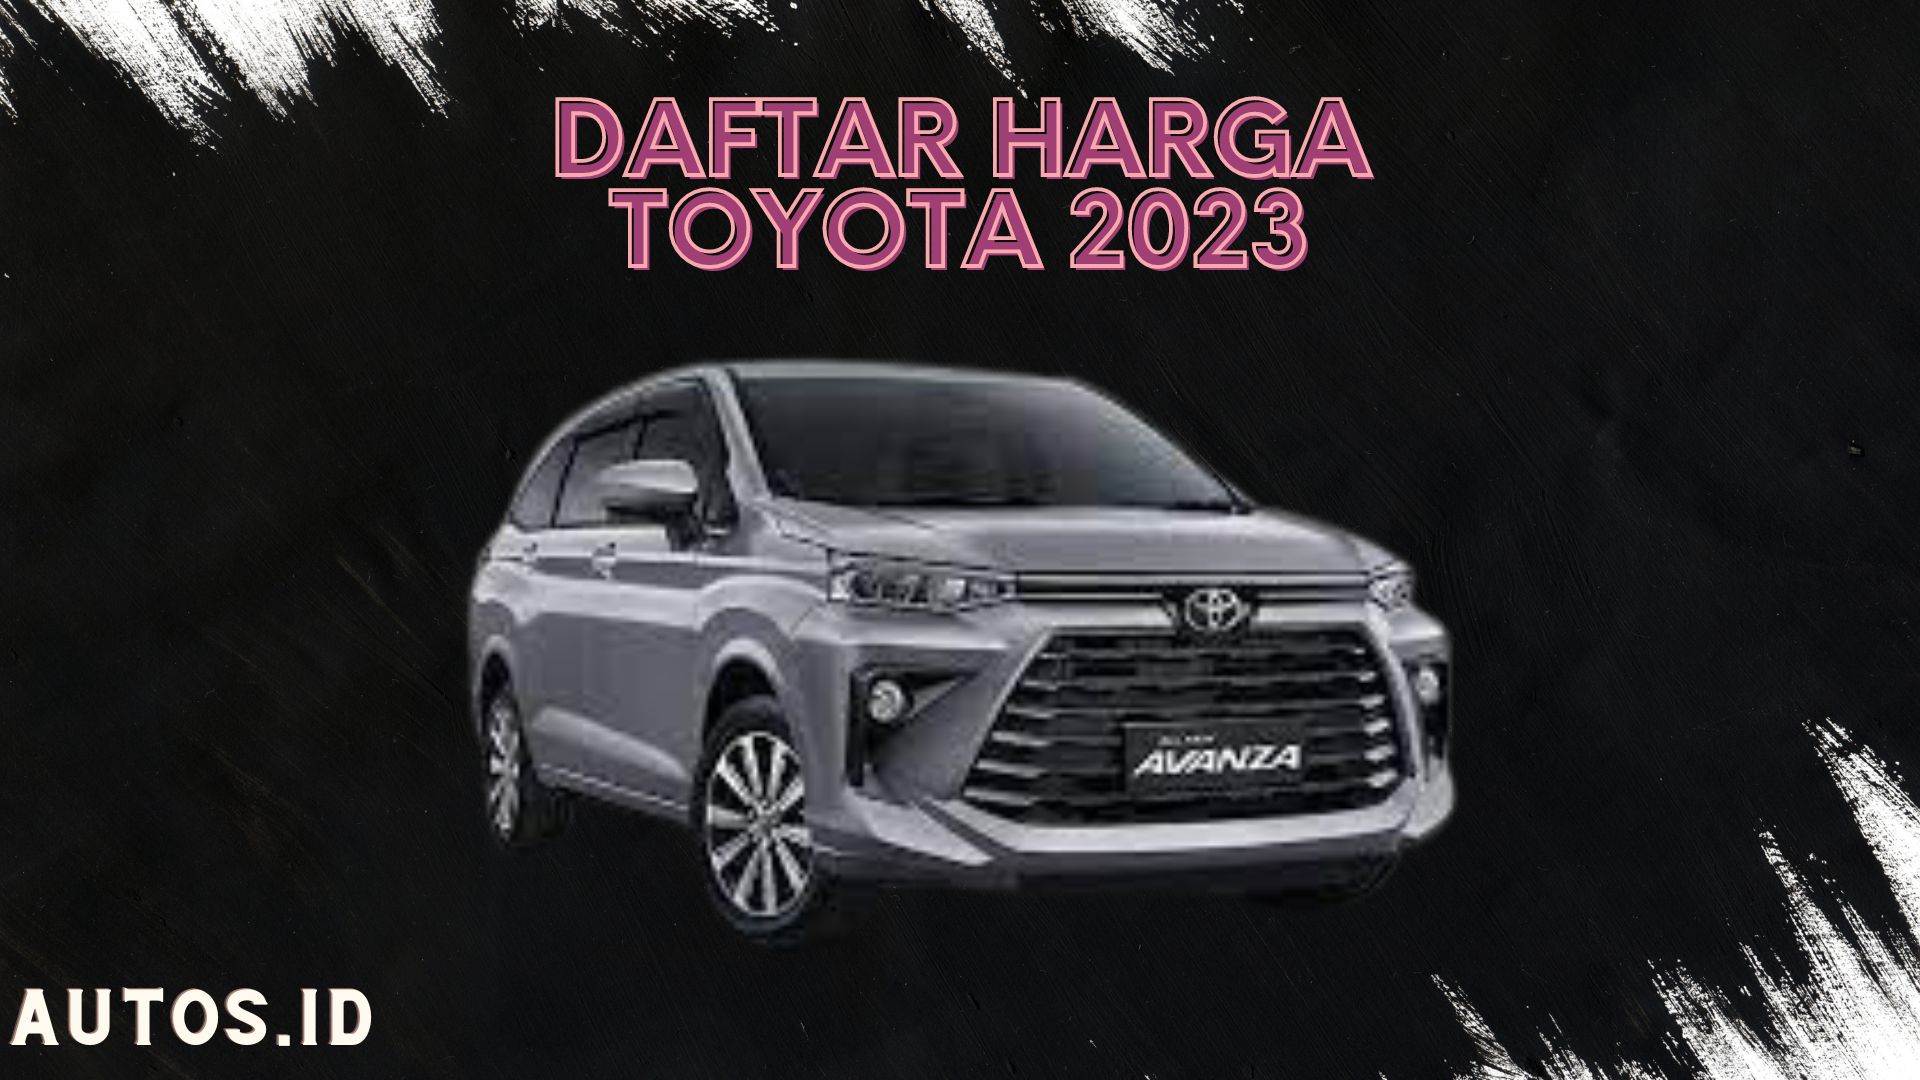 Daftar Harga Mobil Toyota terbaru 2023